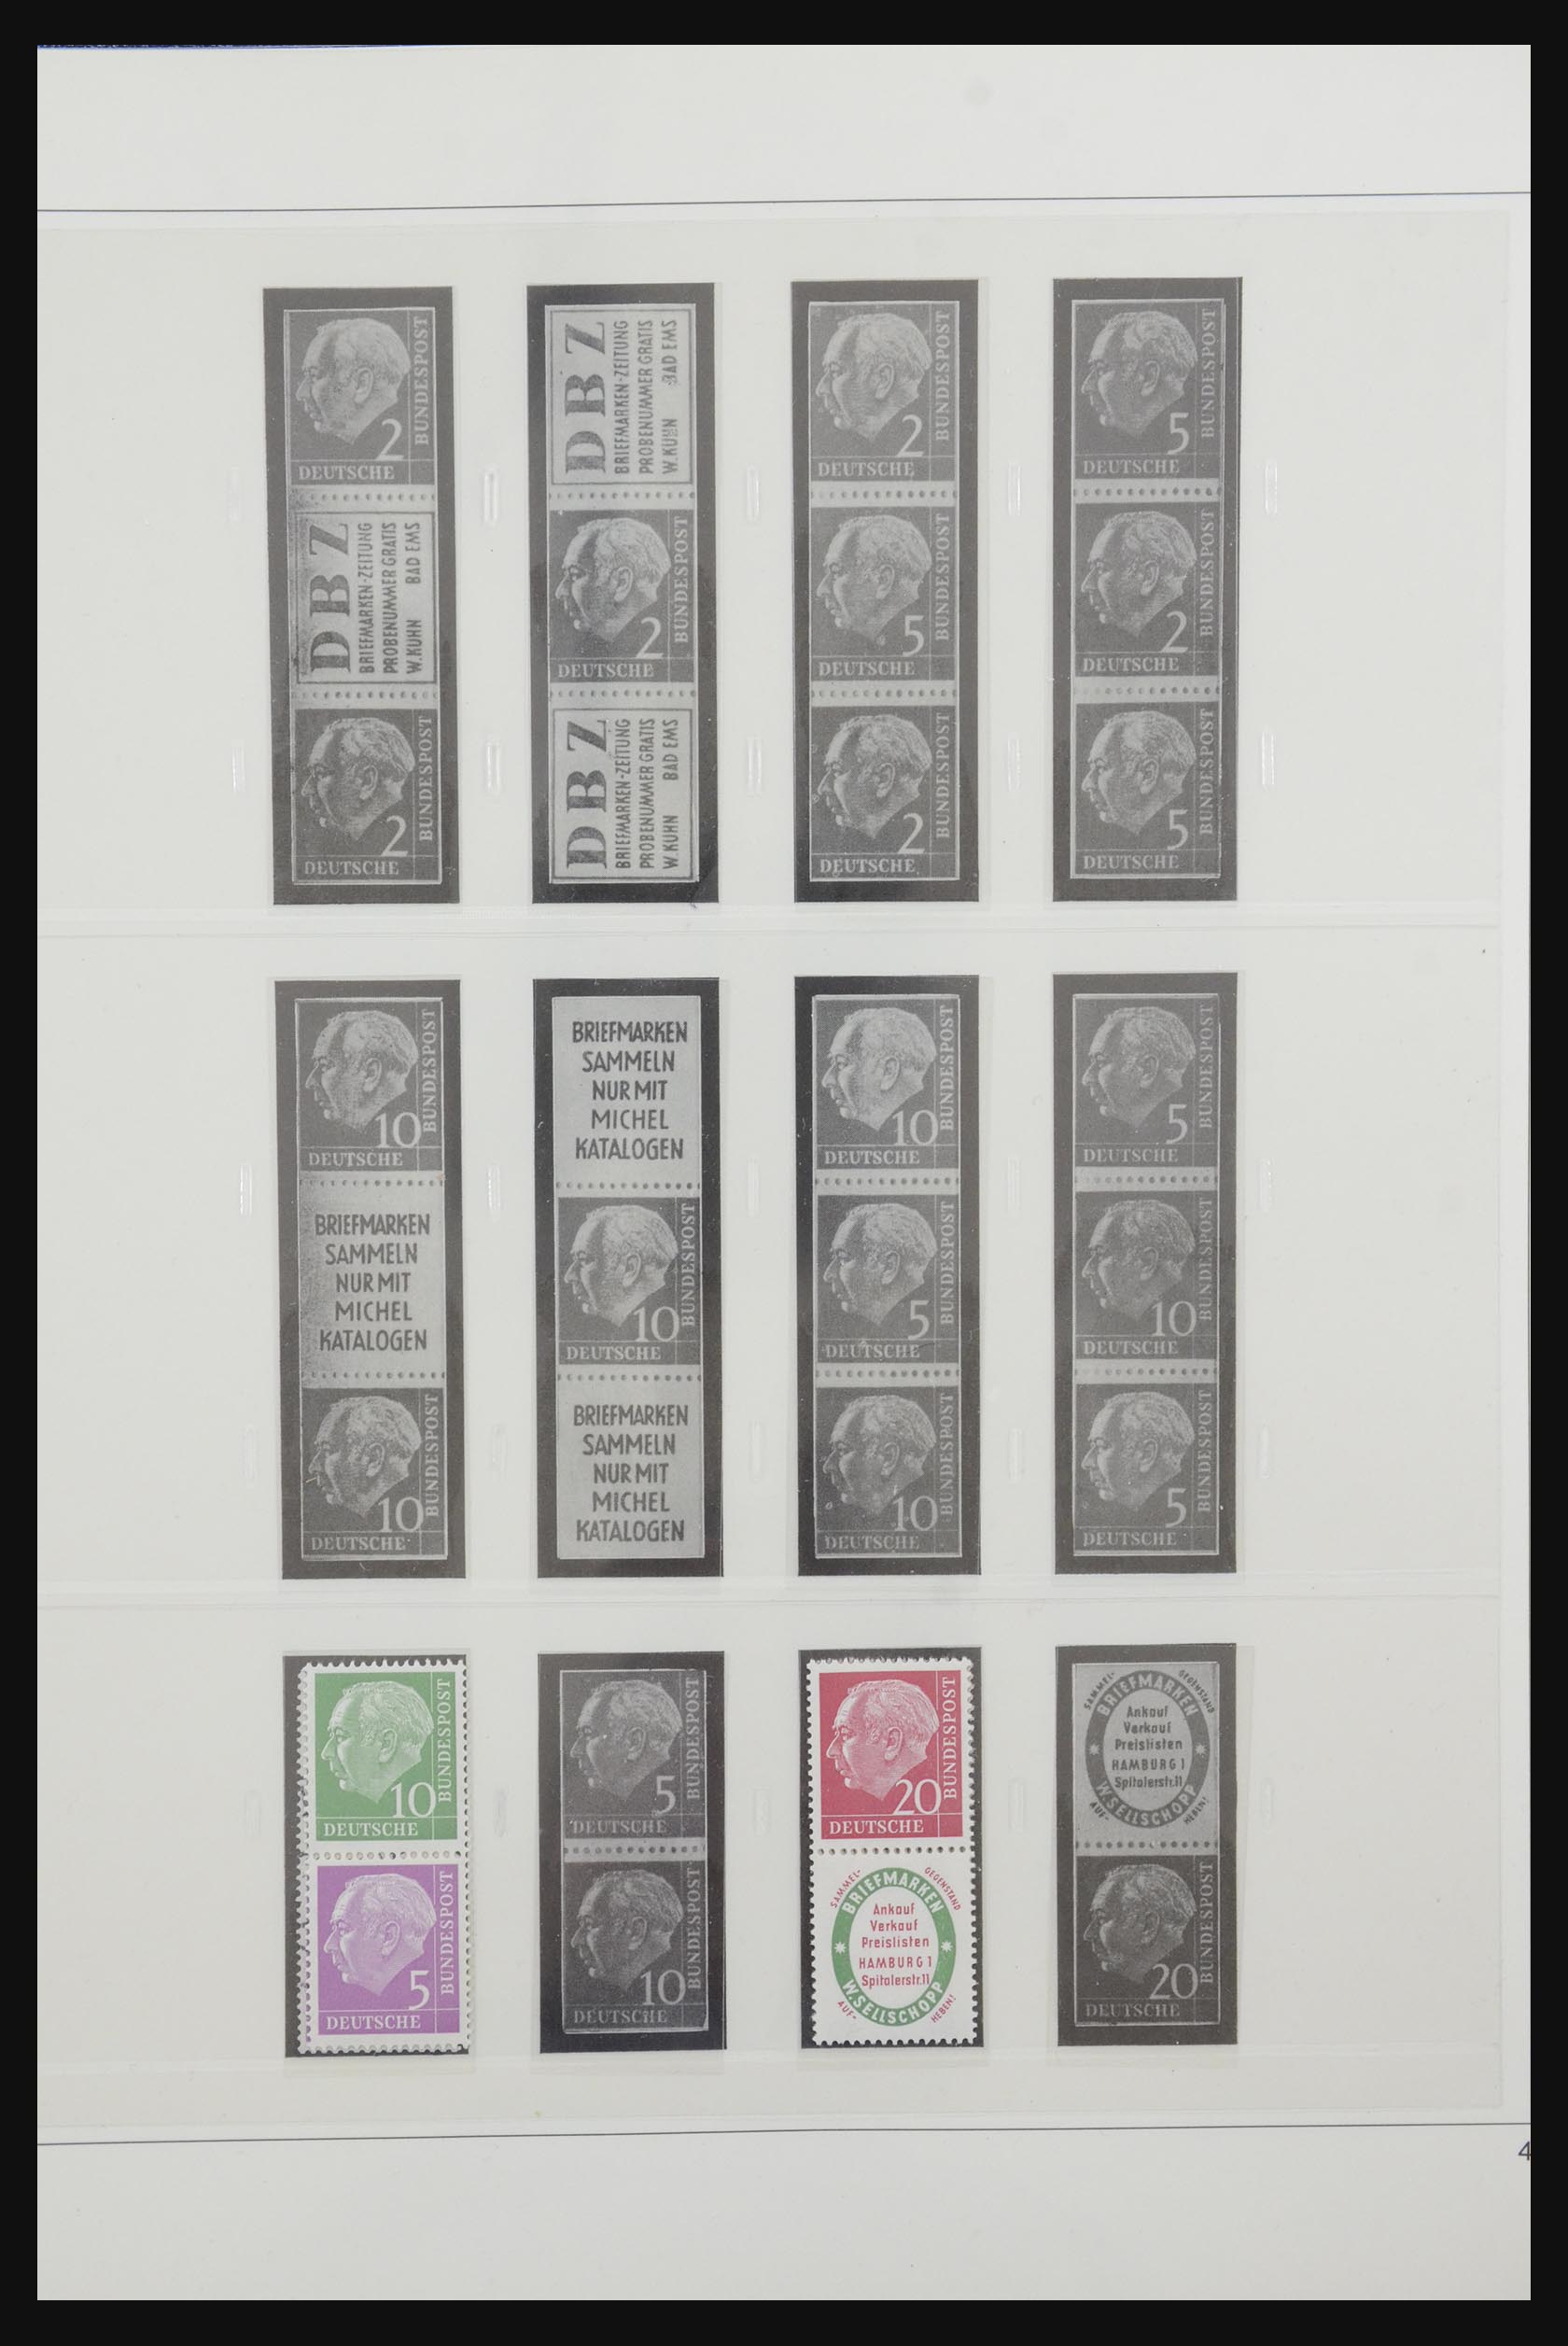 31842 003 - 31842 Bundespost combinaties 1951-2003.